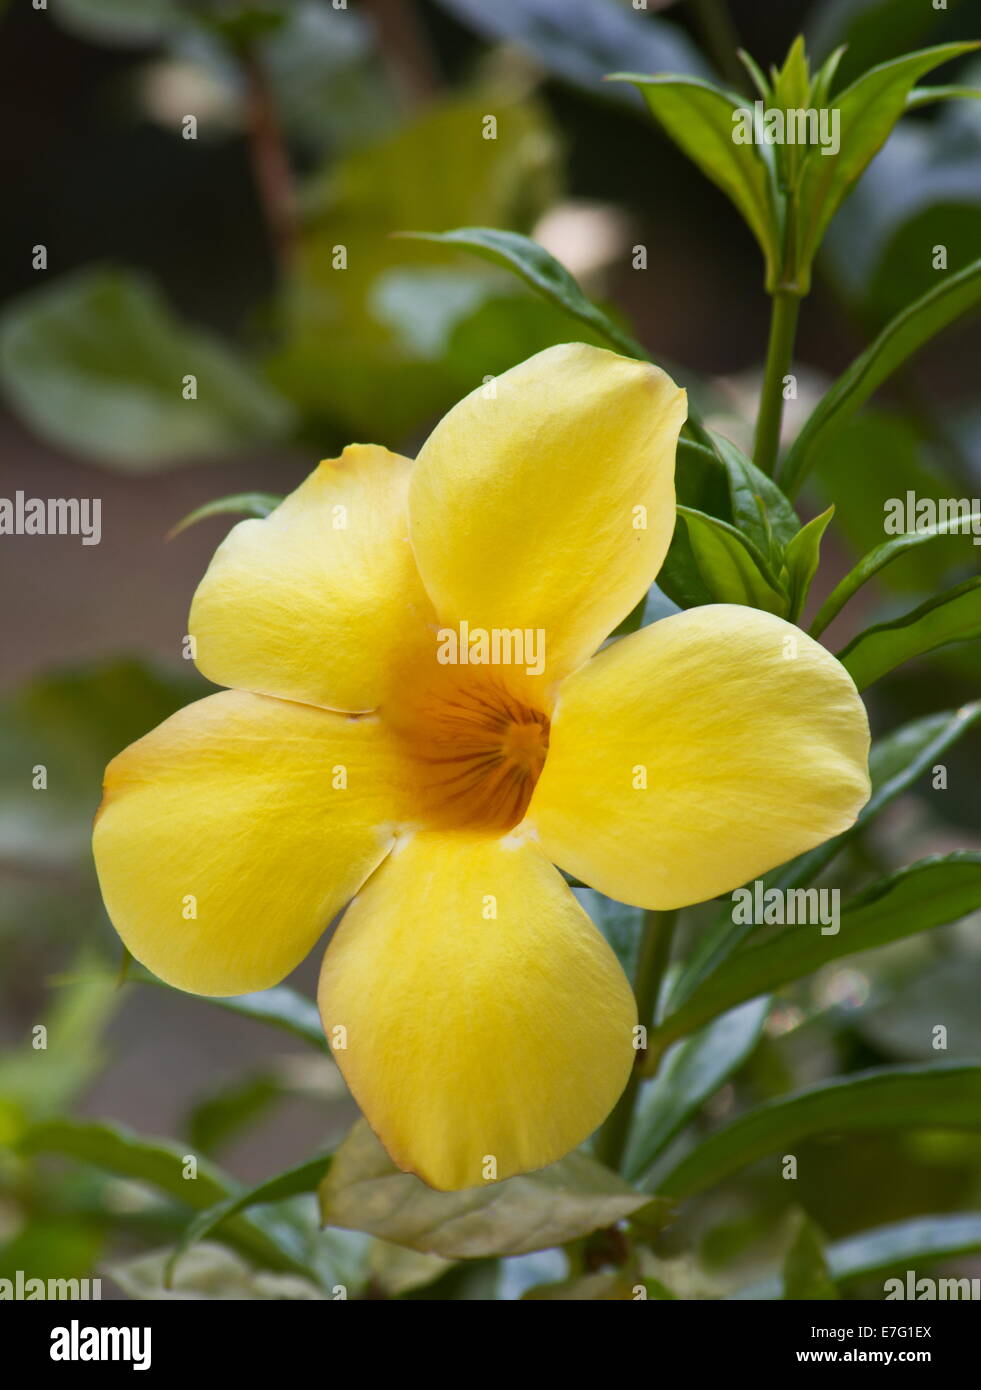 Yellow allamanda (Allamanda cathartica) flower Stock Photo